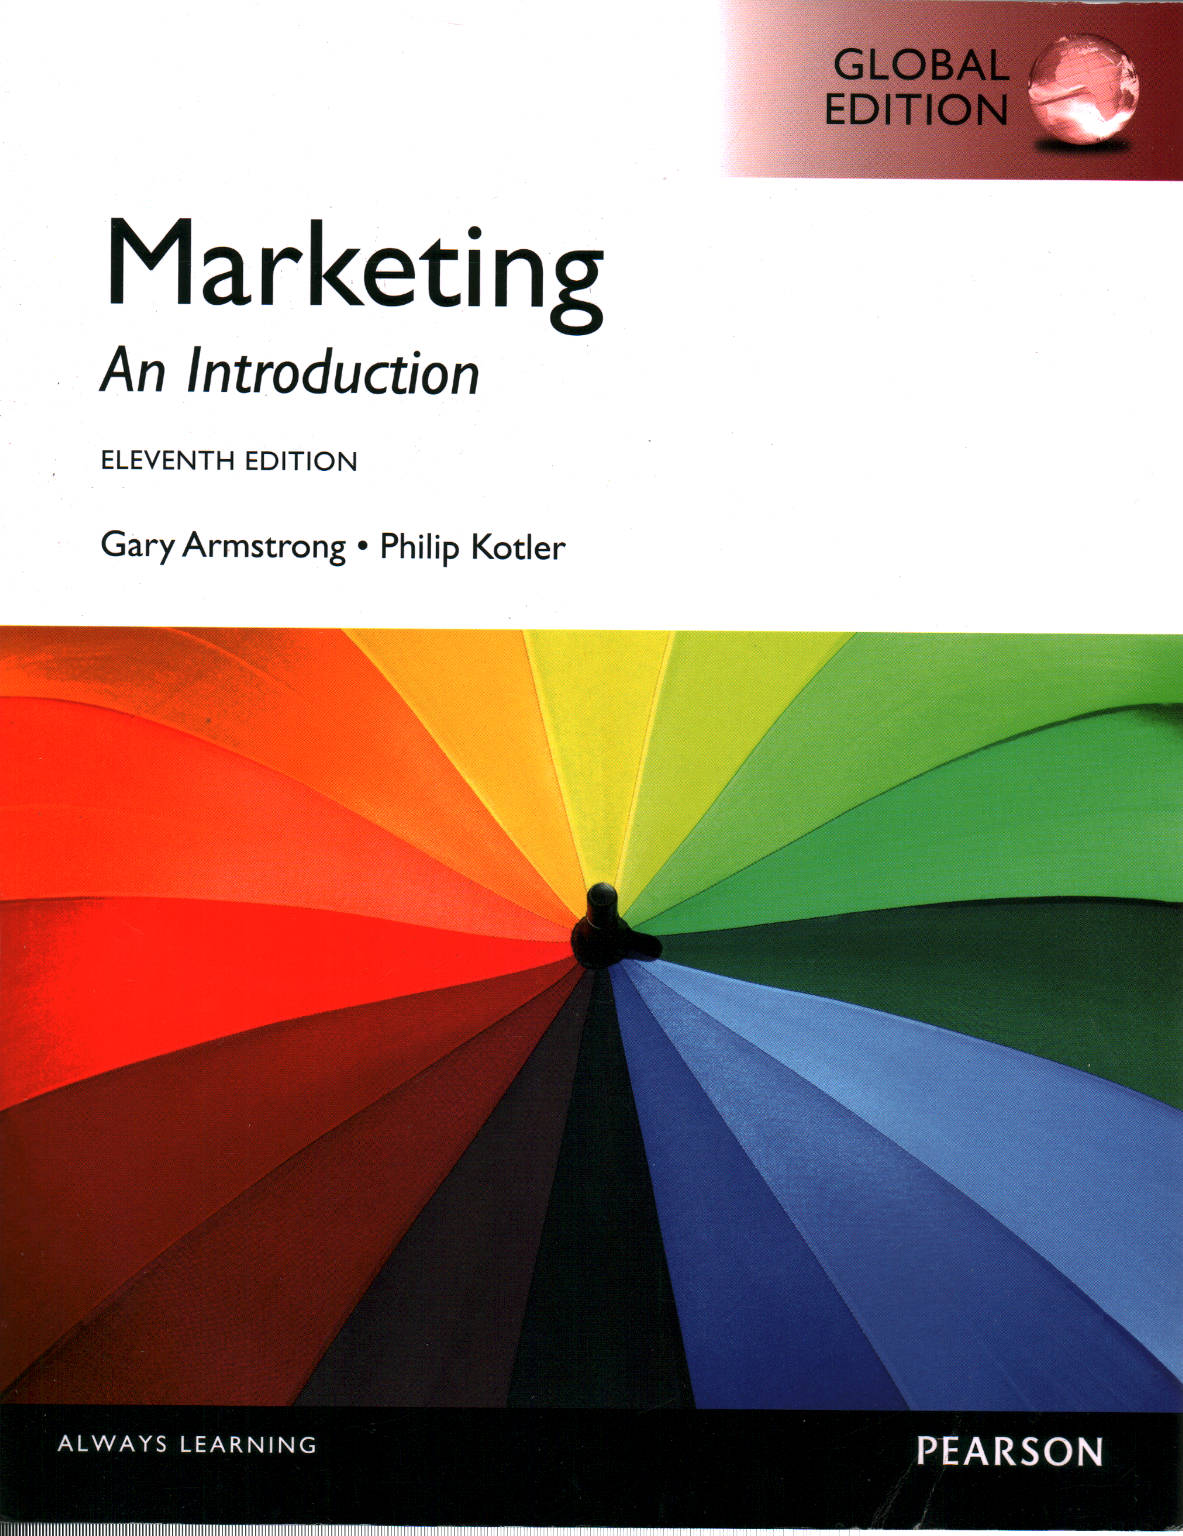 Marketing, Gary Armstrong Philip Kotler